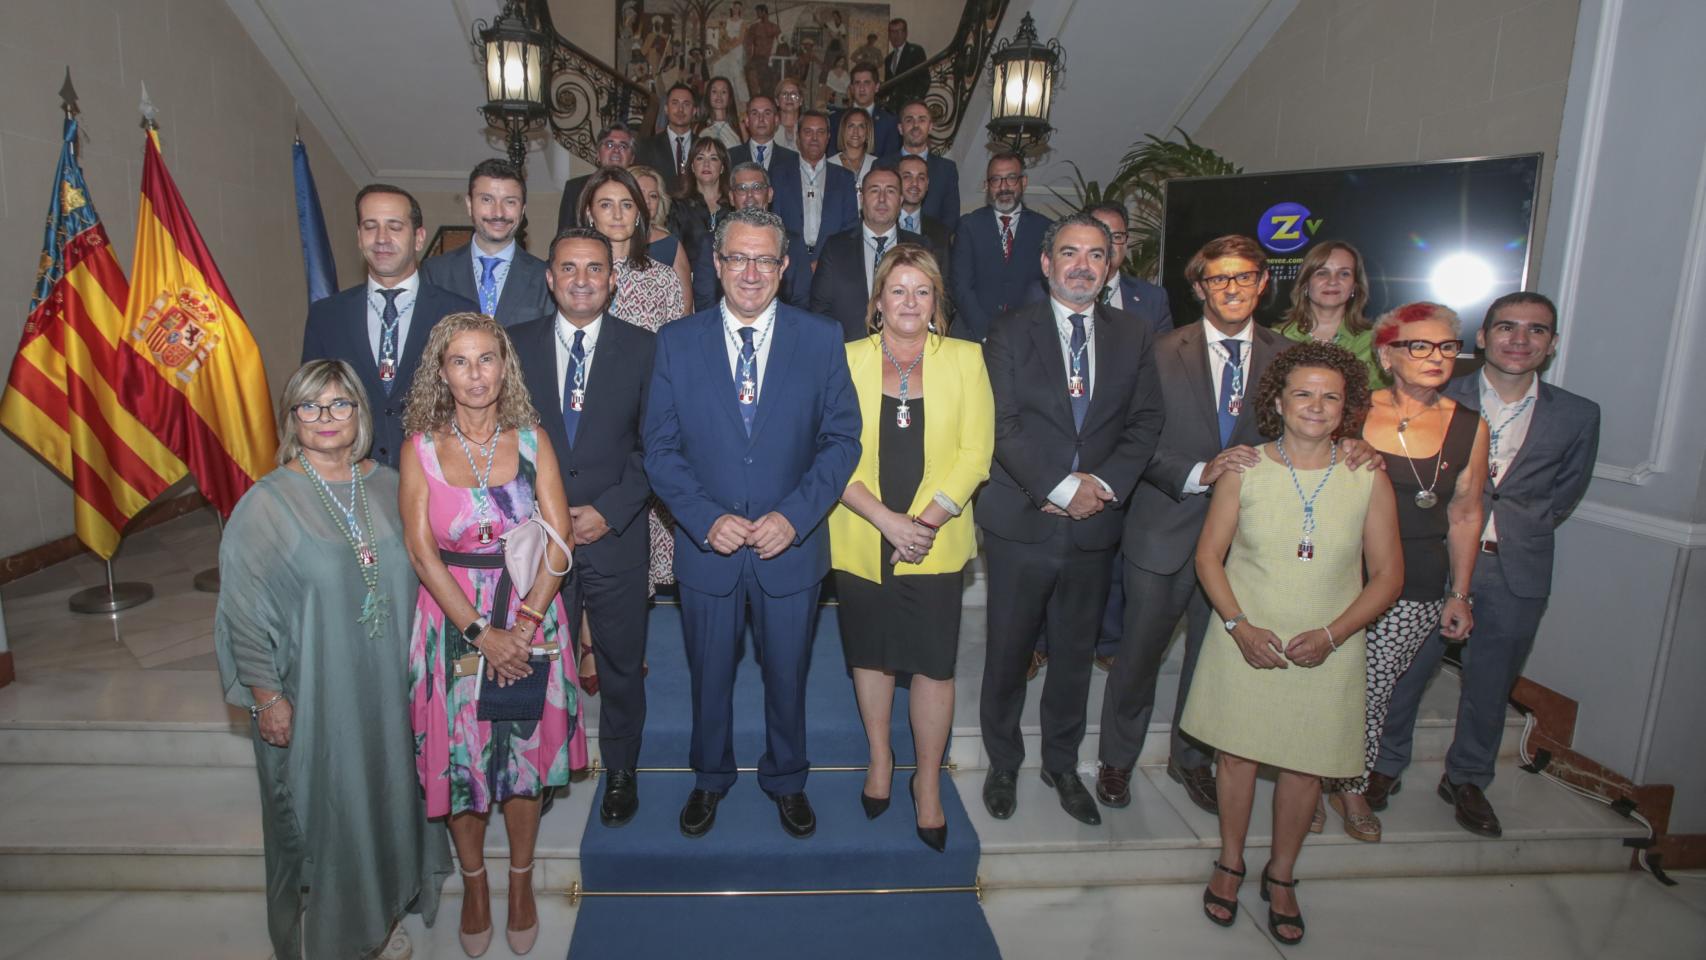 Toni Pérez con el resto de la corporación provincial de Alicante en las escaleras del palacio.